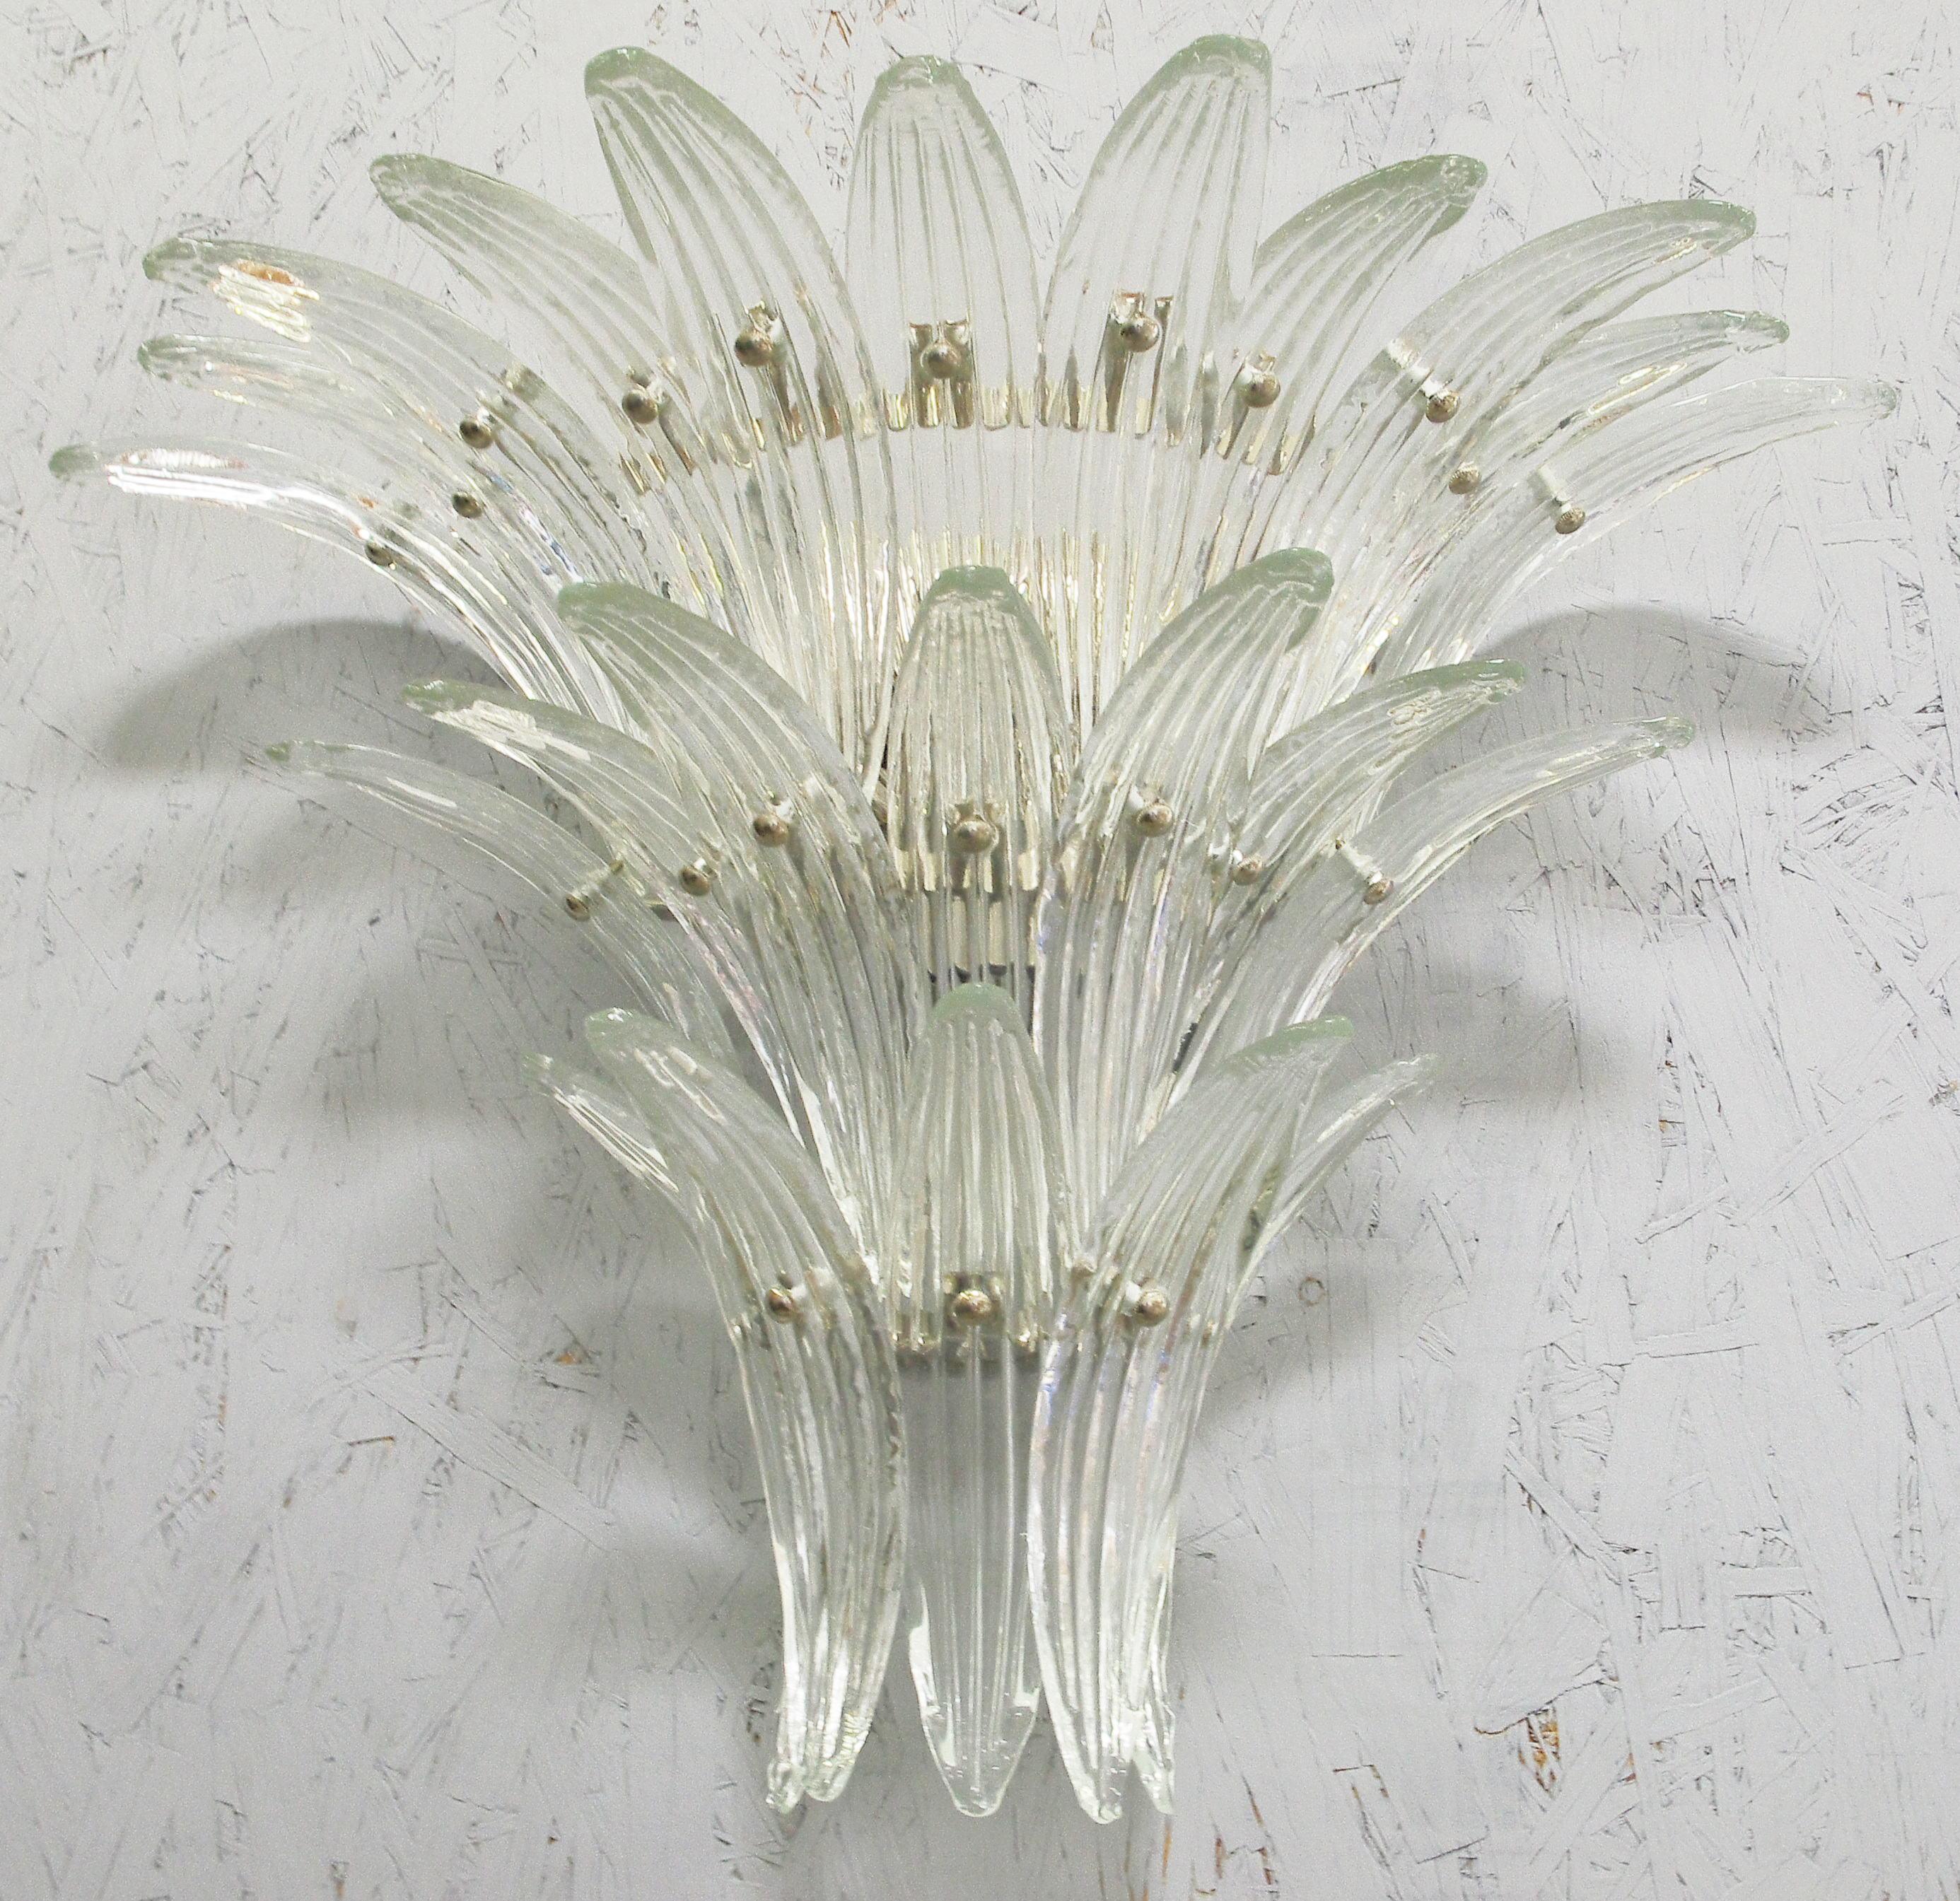 Italienische Palmette Wandleuchte mit 23 Blättern aus klarem Murano Glas, montiert auf einem verchromten Metallrahmen von Fabio Ltd / Made in Italy
3 Leuchten / Typ E12 oder E14 / je max. 40W
Breite: 27 Zoll / Höhe: 20 Zoll / Tiefe: 10 Zoll
Nur auf